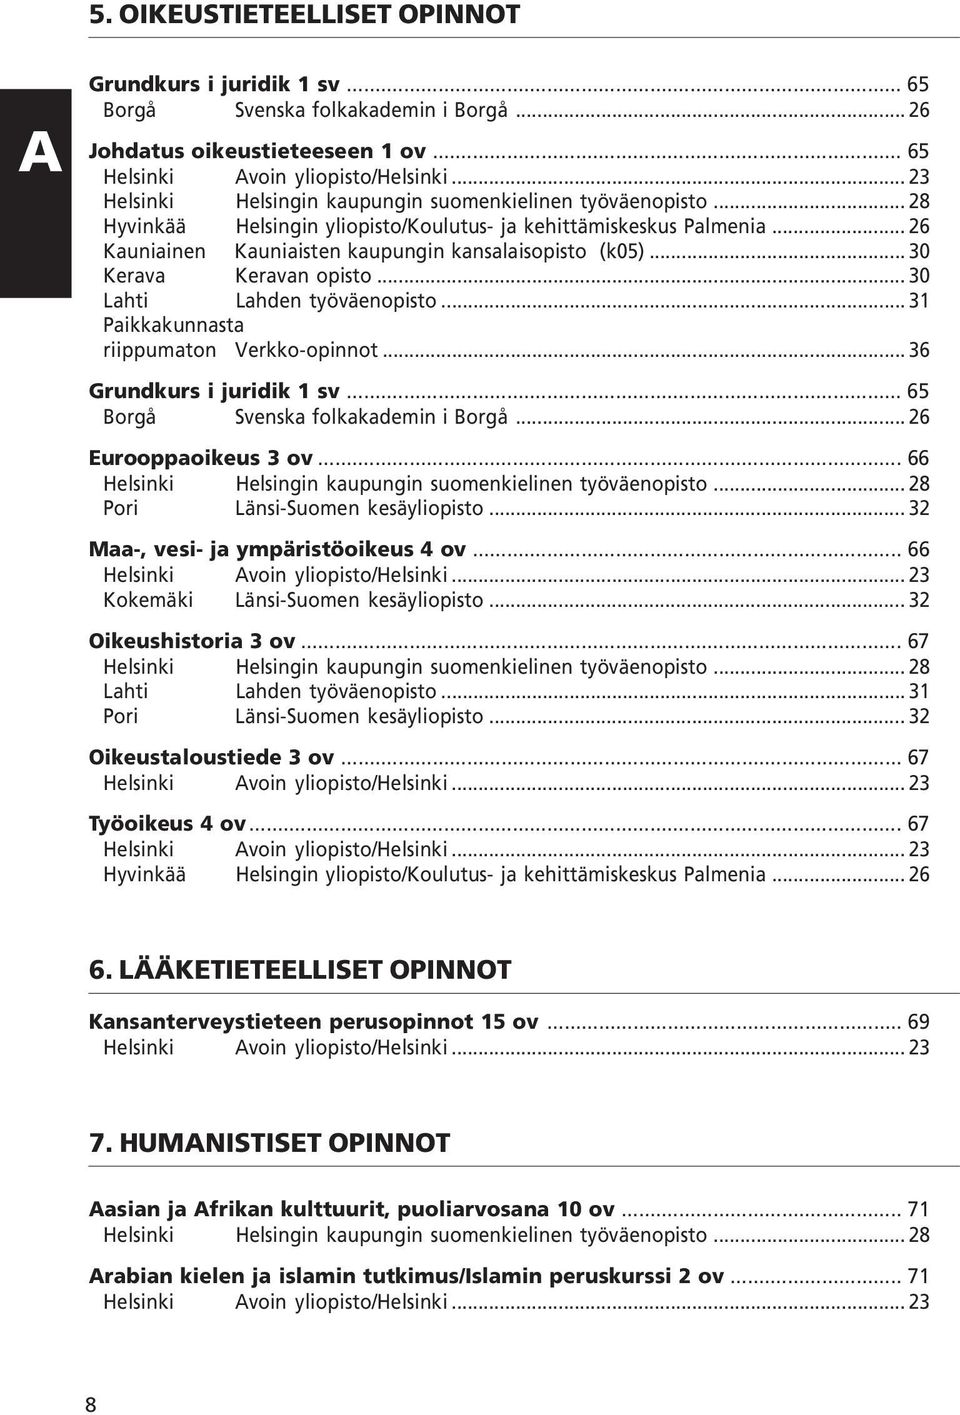 .. 30 Kerava Keravan opisto... 30 Lahti Lahden työväenopisto... 31 Paikkakunnasta riippumaton Verkko-opinnot... 36 Grundkurs i juridik 1 sv... 65 Borgå Svenska folkakademin i Borgå.